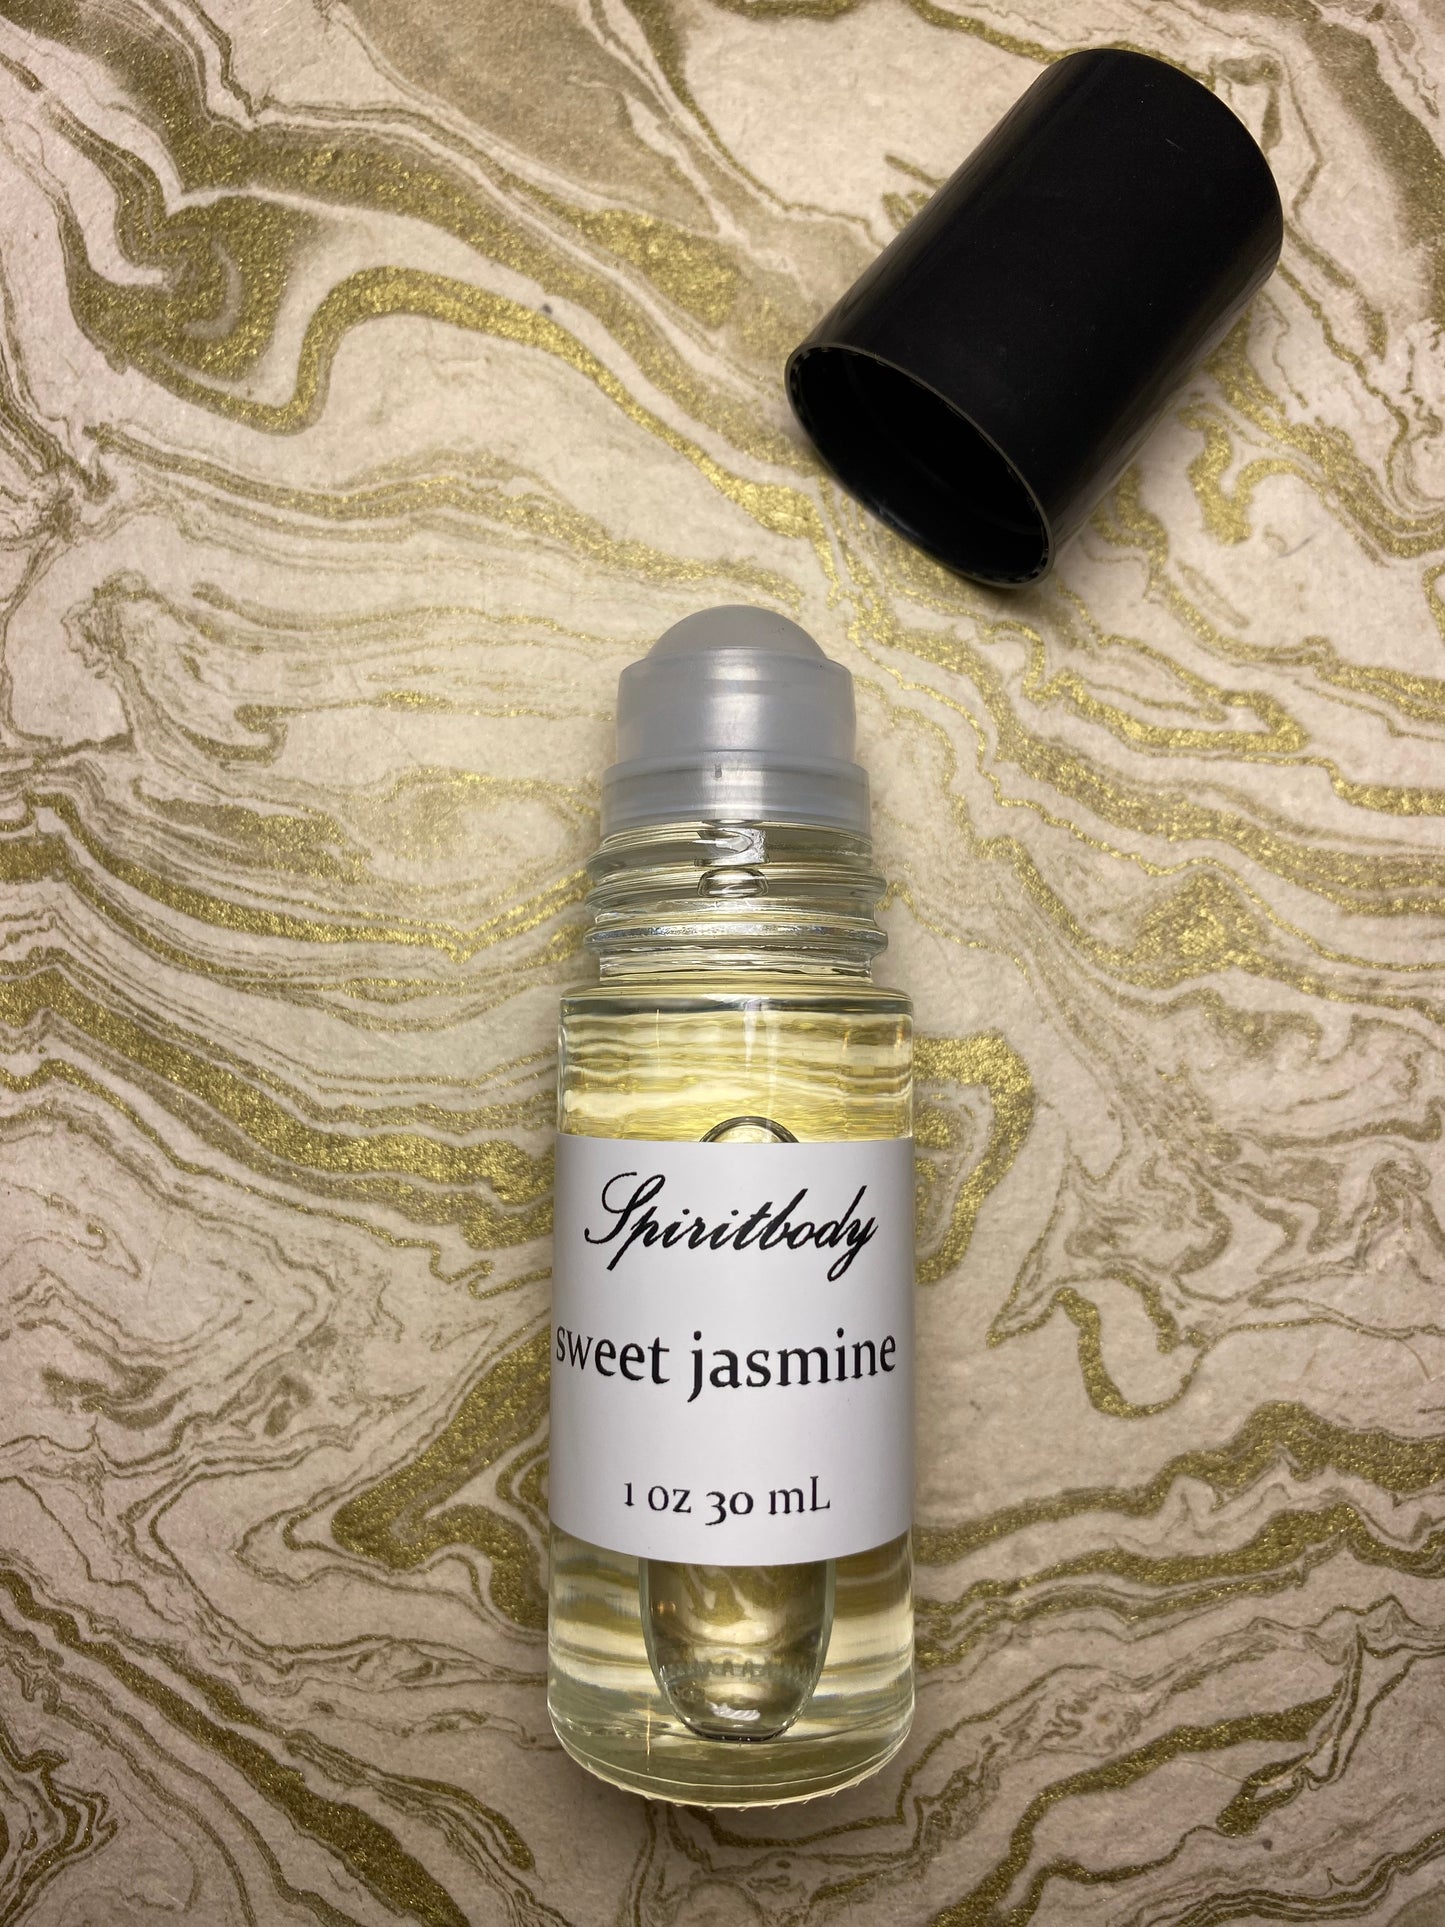 Sweet Jasmine